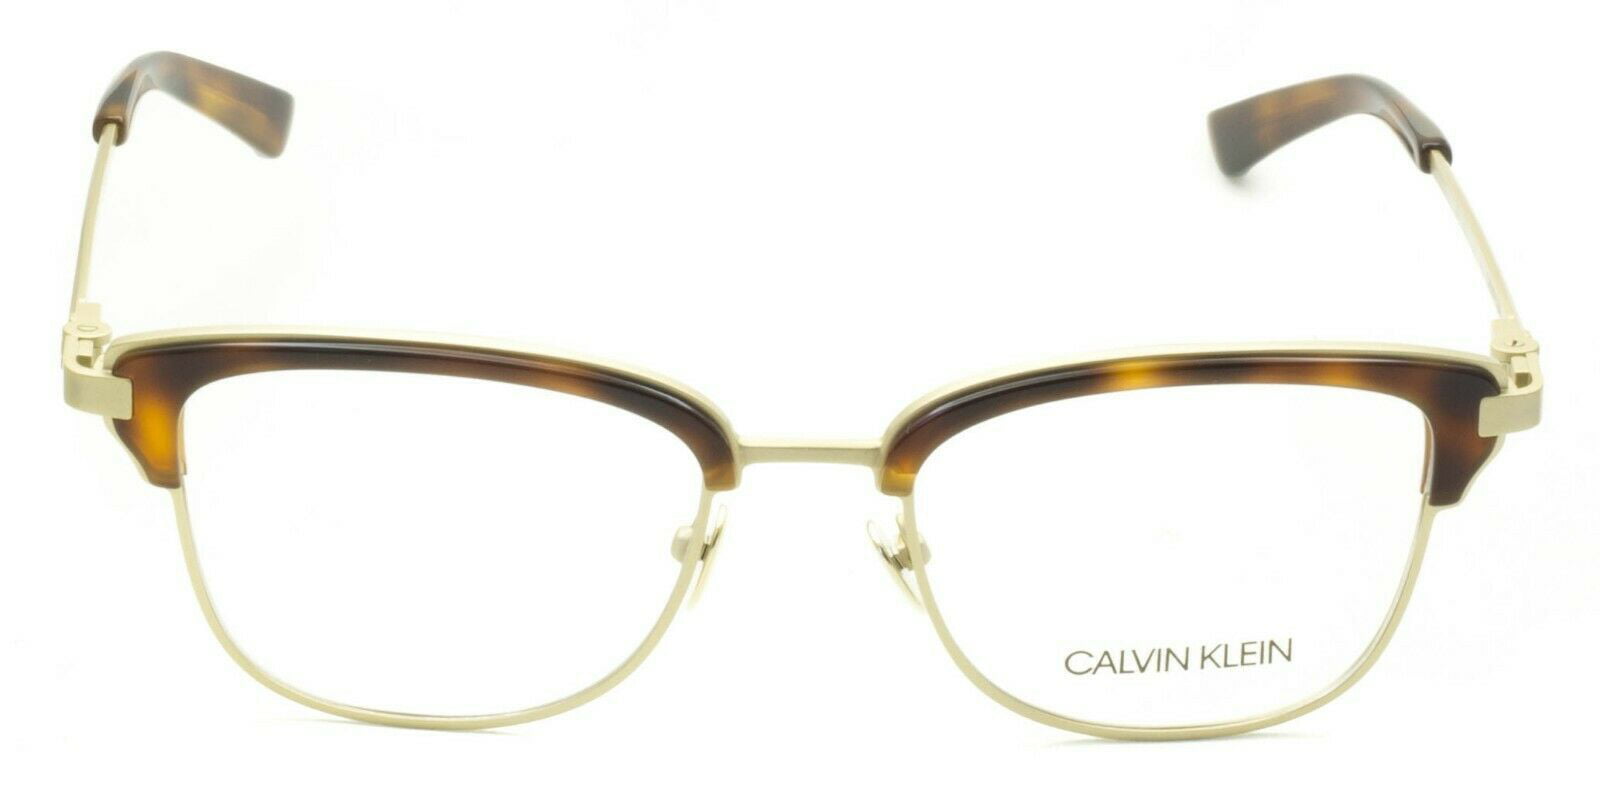 Eyeglasses CALVIN KLEIN CK 8066 218 TORTOISE/GOLD